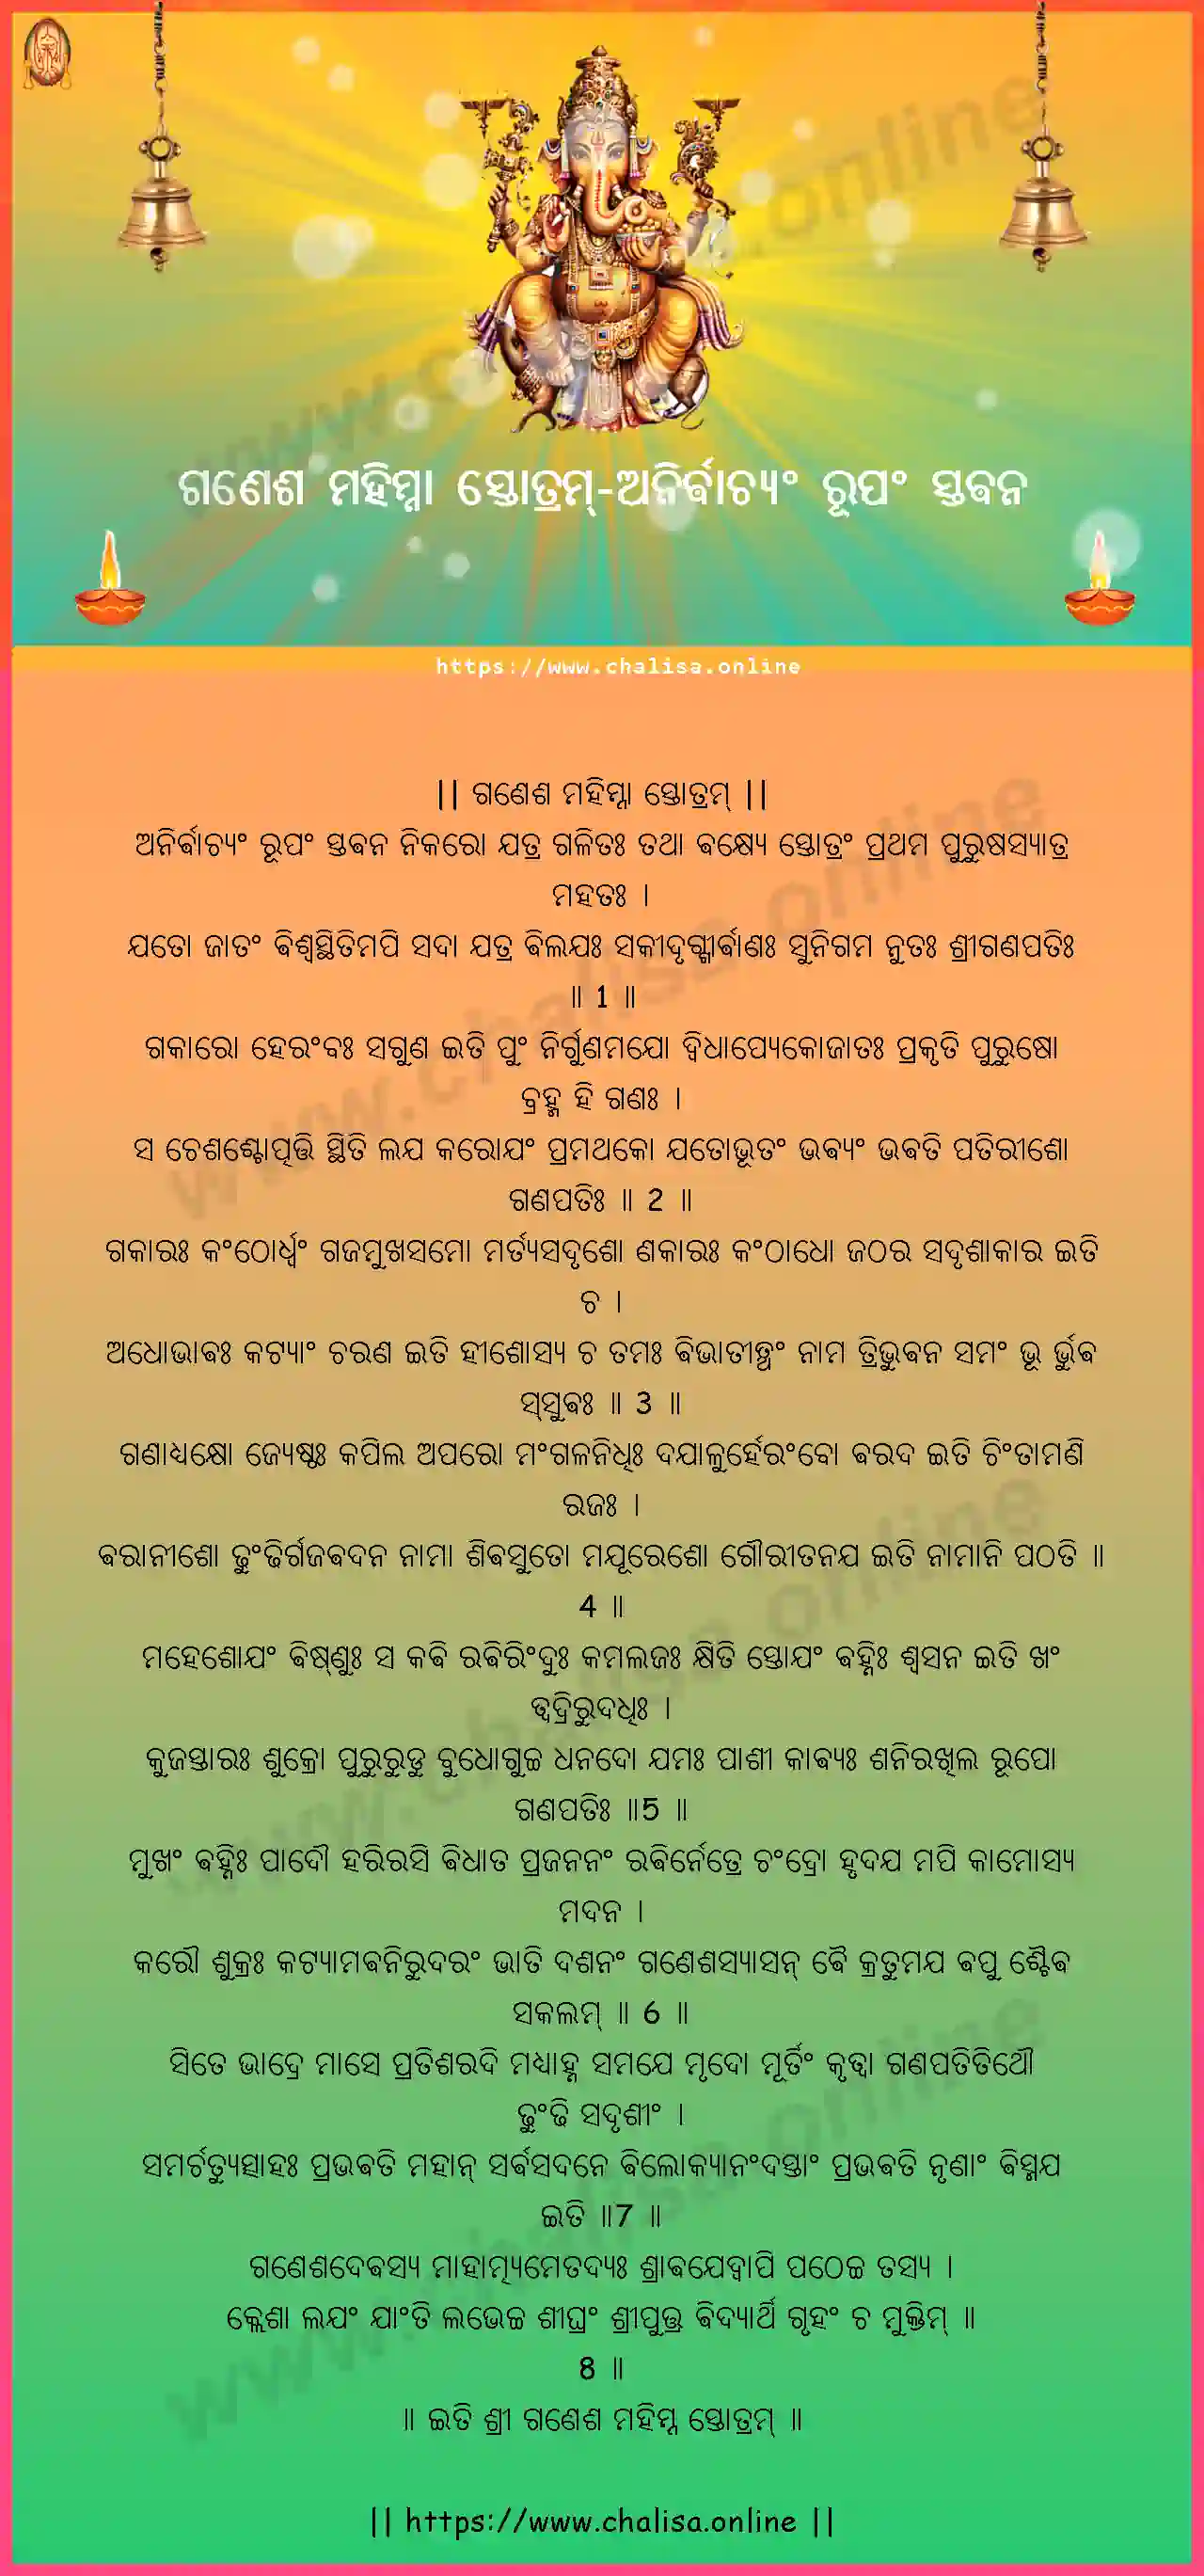 anirvachyam-rupam-ganesha-mahimna-stotram-oriya-oriya-lyrics-download